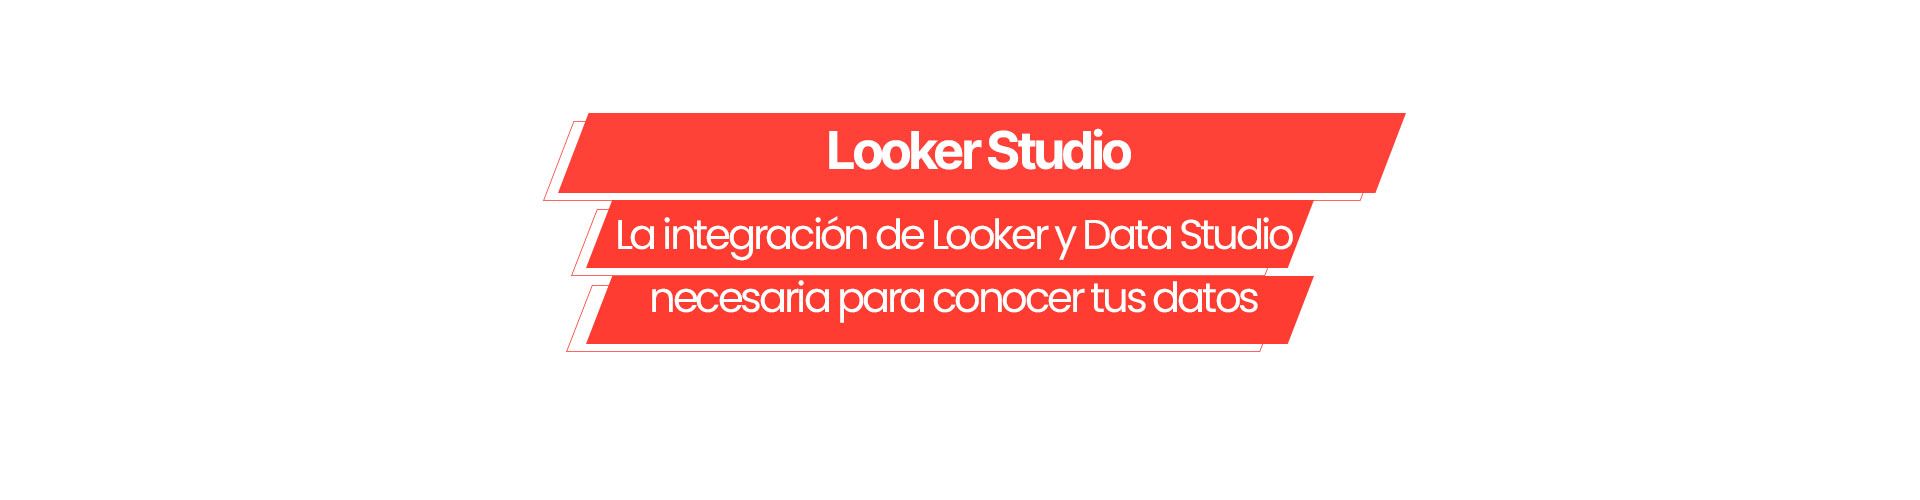 Looker Studio: La integración de Looker y Data Studio necesaria para conocer tus datos